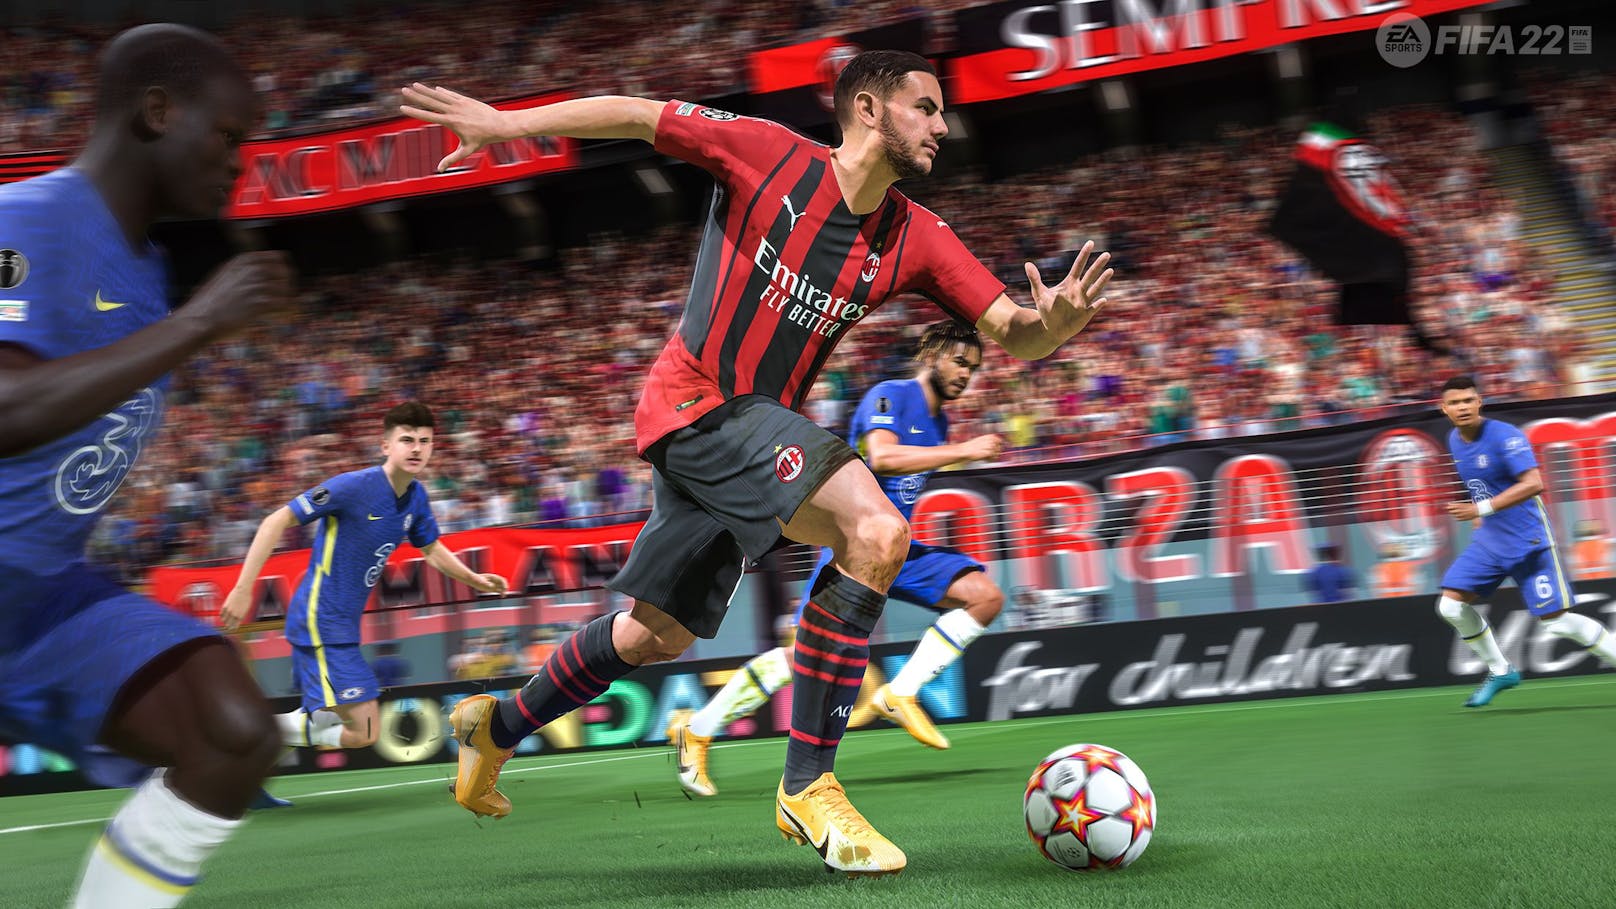 Der Hit! "FIFA 22" brilliert mit völlig neuem Gameplay